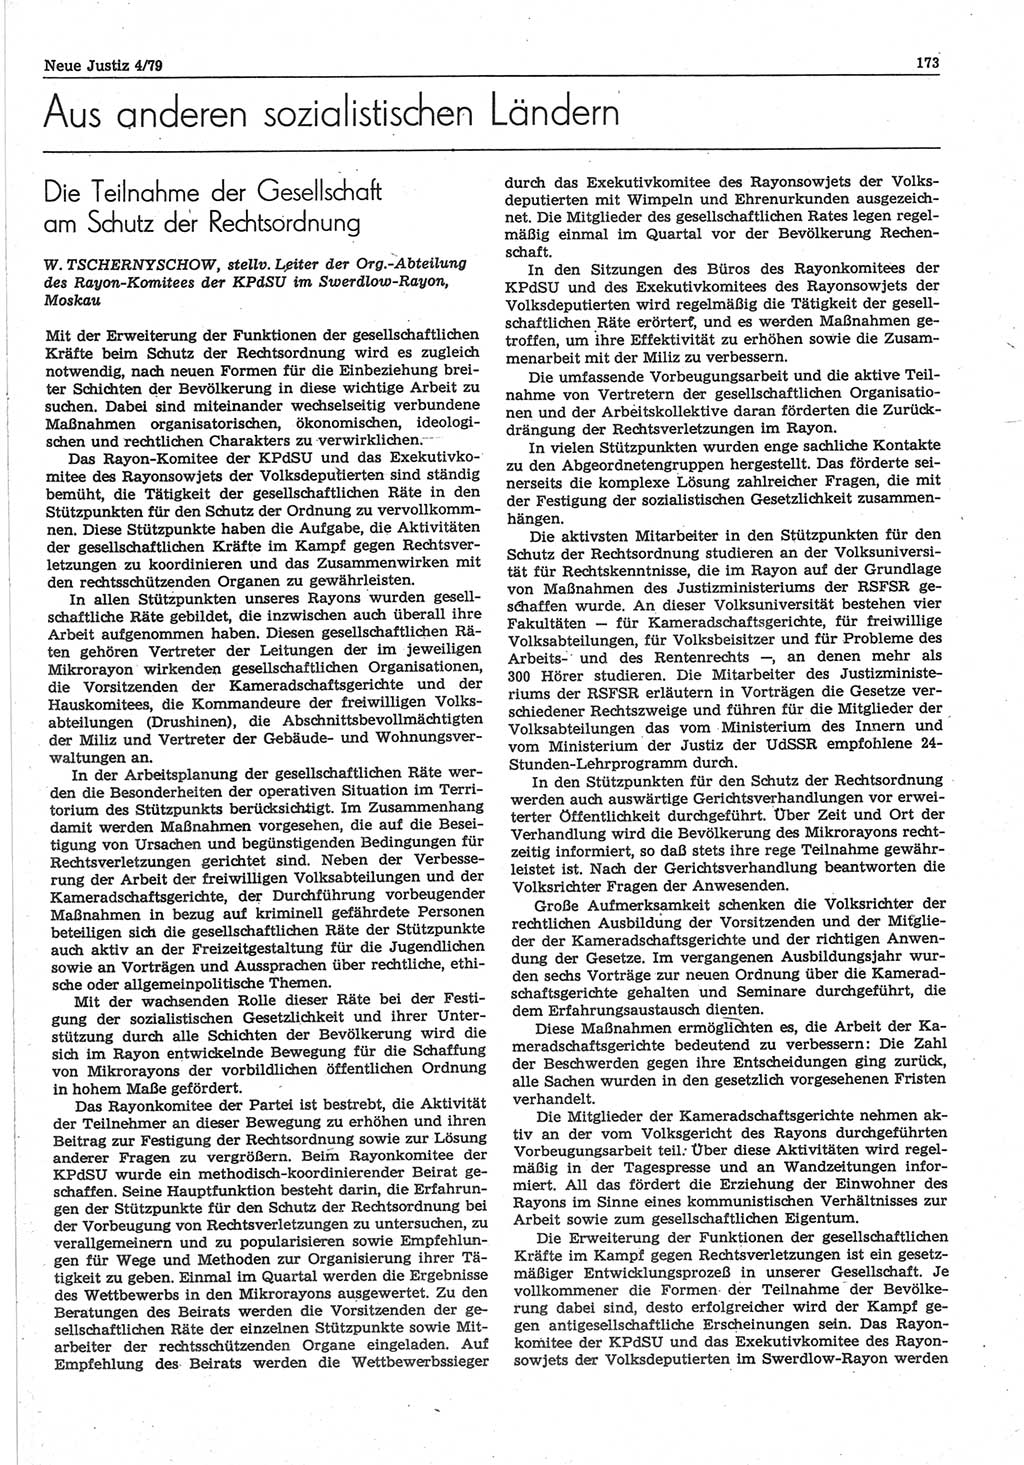 Neue Justiz (NJ), Zeitschrift für sozialistisches Recht und Gesetzlichkeit [Deutsche Demokratische Republik (DDR)], 33. Jahrgang 1979, Seite 173 (NJ DDR 1979, S. 173)